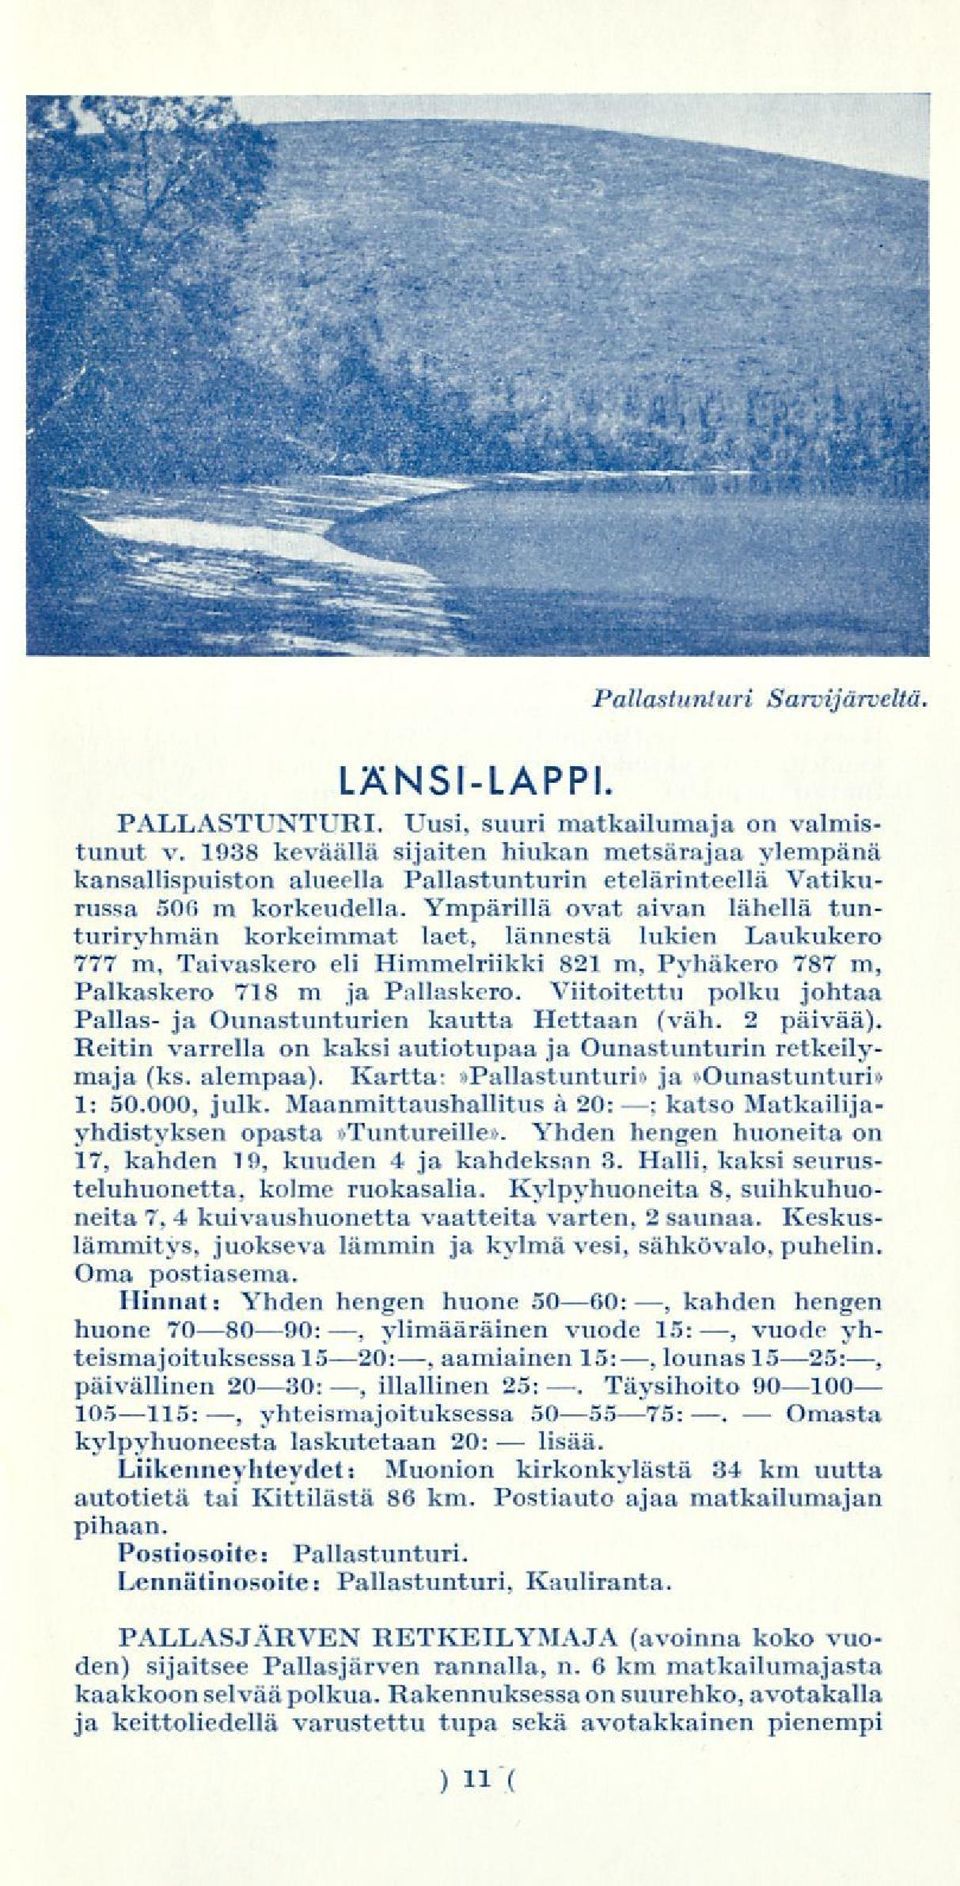 Ympärillä ovat aivan lähellä tunturiryhmän korkeimmat laet, lännestä lukien Laukukero 777 m, Taivaskero eli Himmelriikki 821 m, Pyhäkero 787 m, Palkaskero 718 m ja Pallaskero.